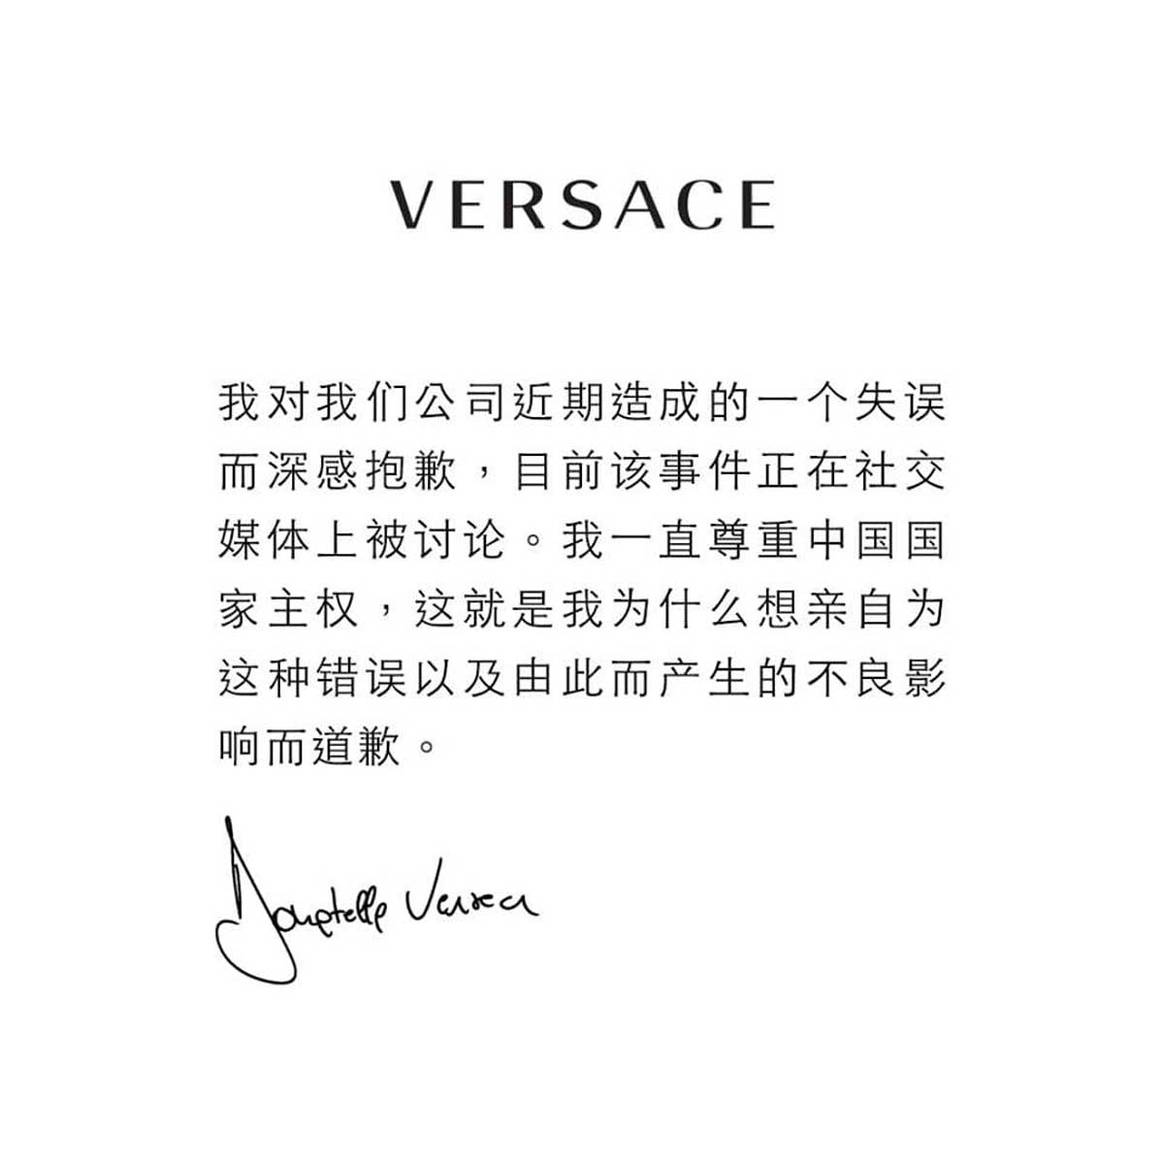 Versace принес публичные извинения в адрес Китая